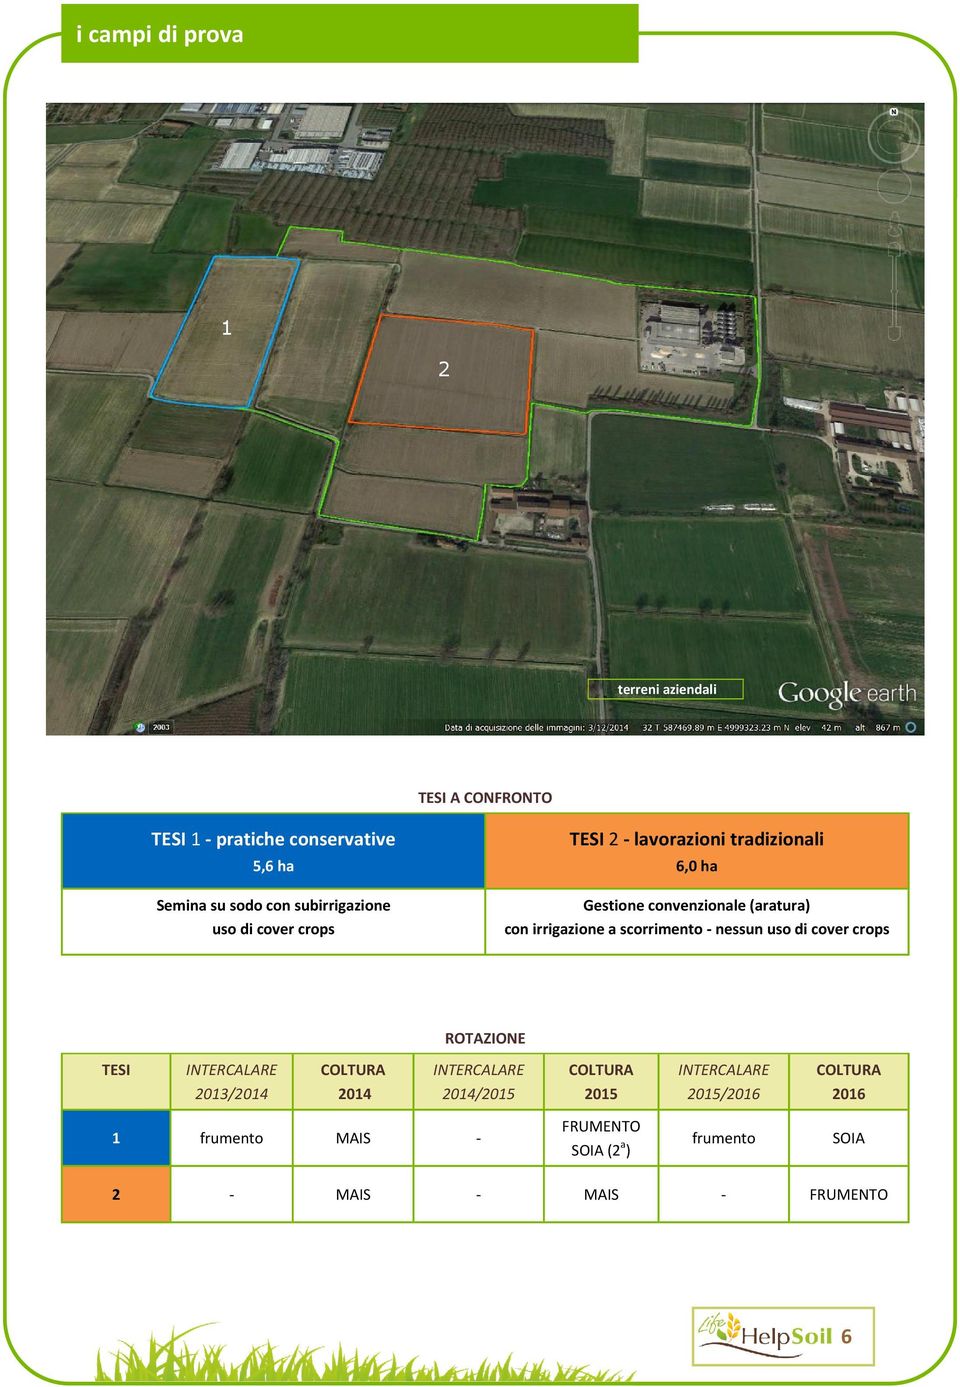 irrigazione a scorrimento - nessun uso di cover crops ROTAZIONE TESI INTERCALARE 2013/2014 COLTURA 2014 INTERCALARE